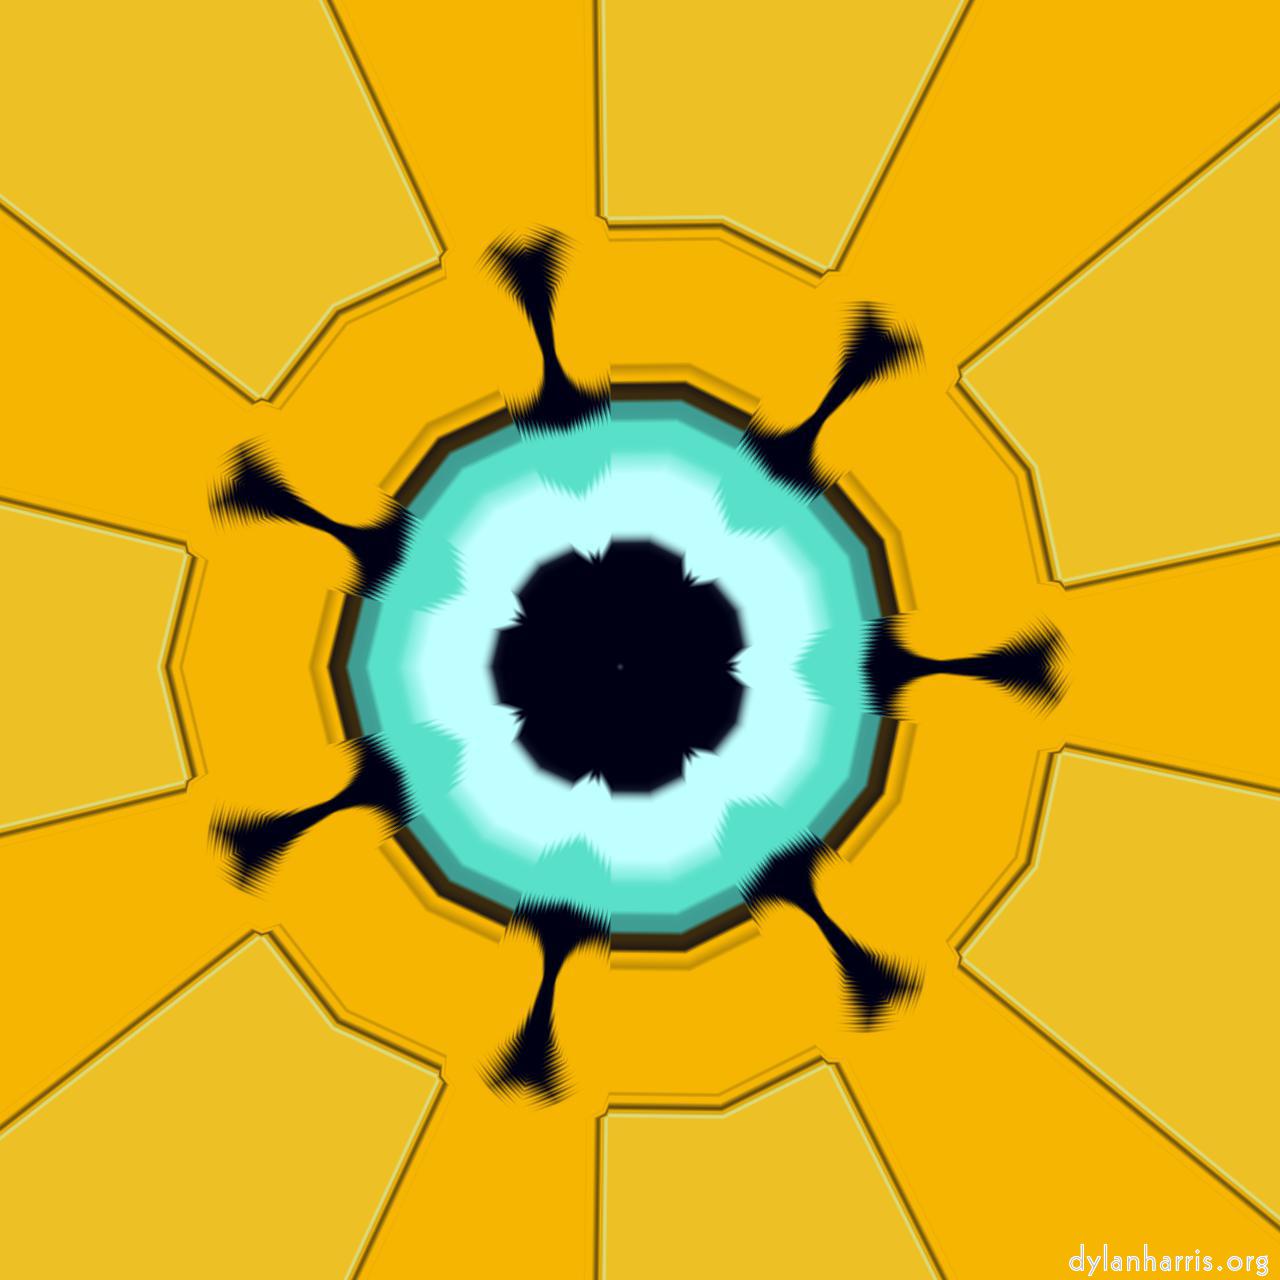 image: abstract circular :: star 9 sym